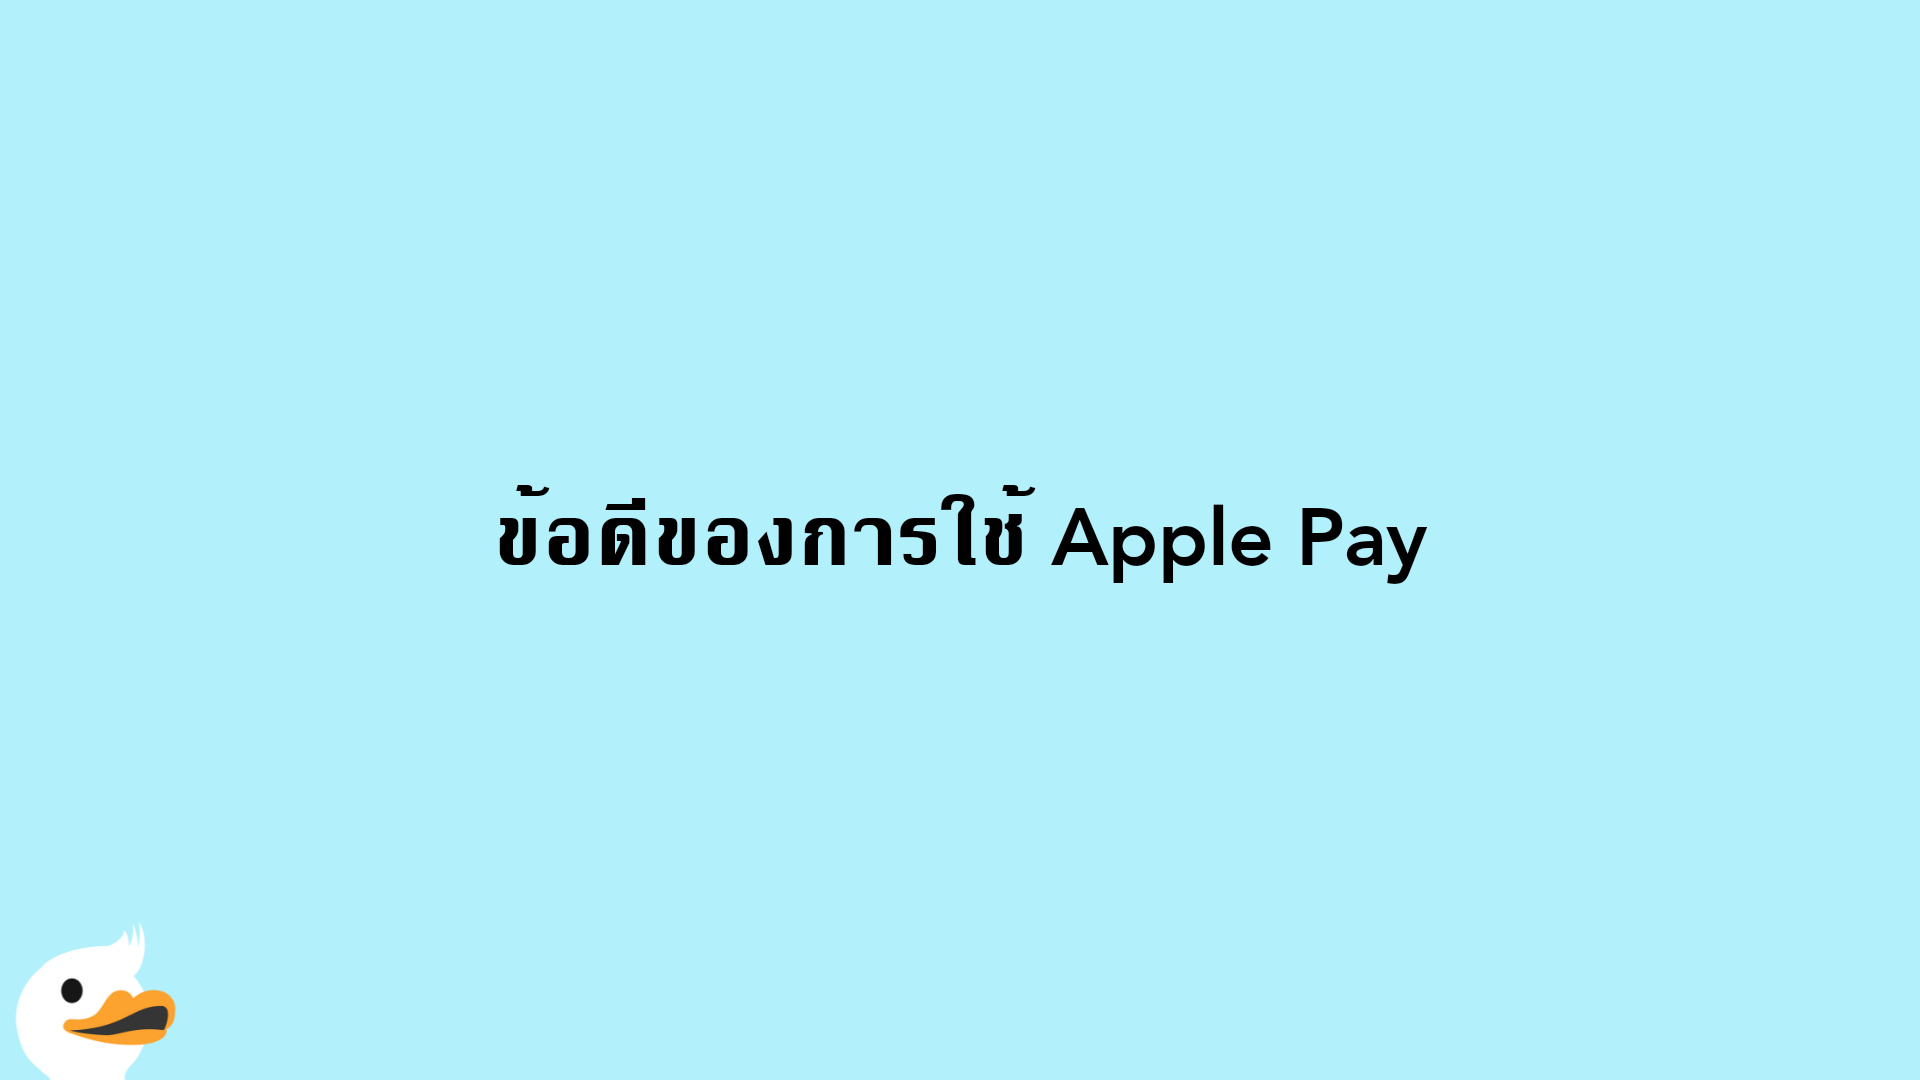 ข้อดีของการใช้ Apple Pay